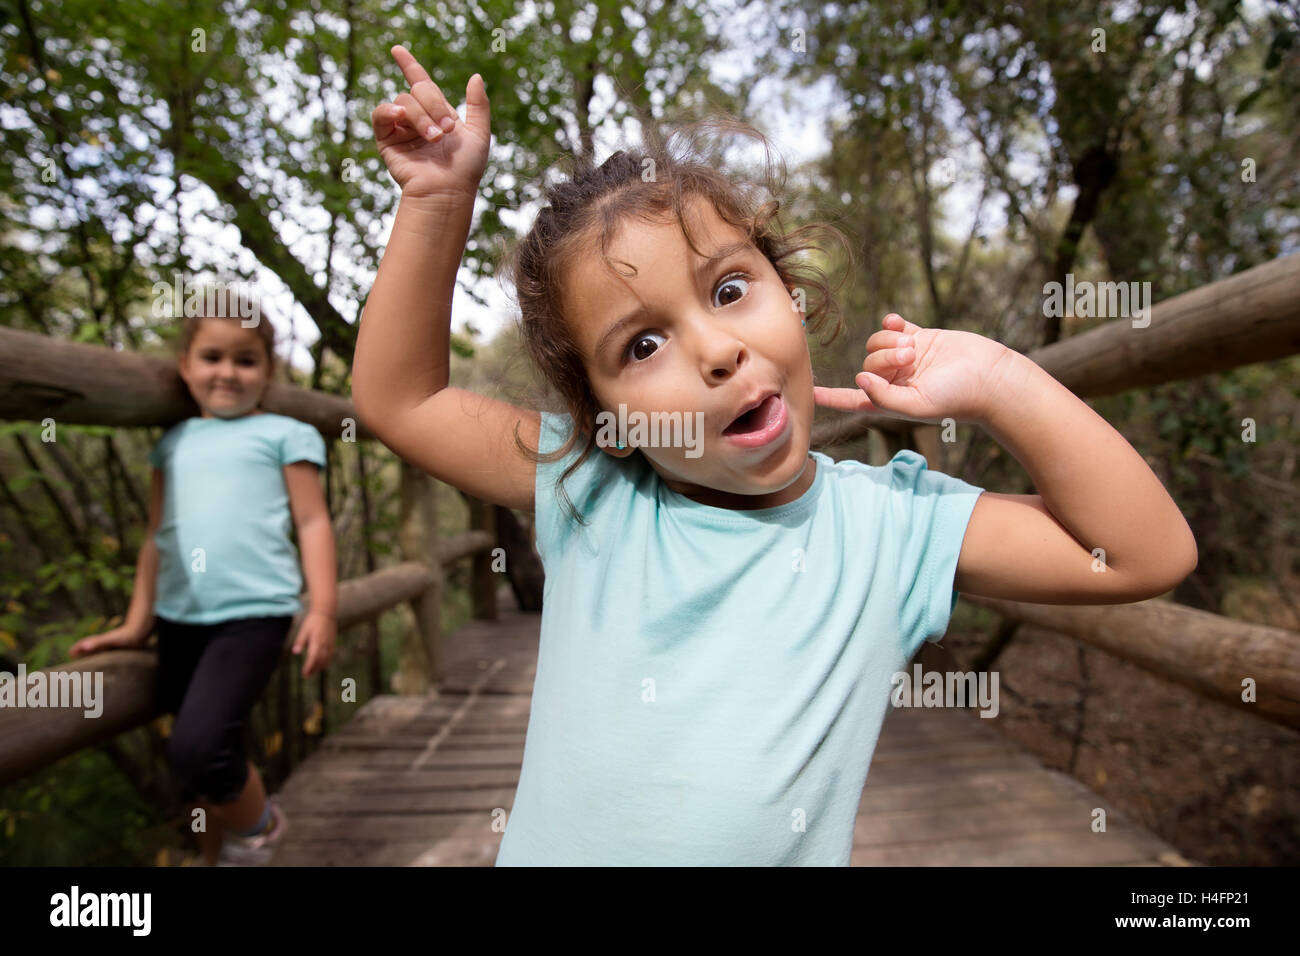 Porträt von fröhlichen kleinen Mädchen gestikulieren und machen lustige Grimasse in die Kamera im Park. Ihre Schwester auf Hintergrund. Stockfoto